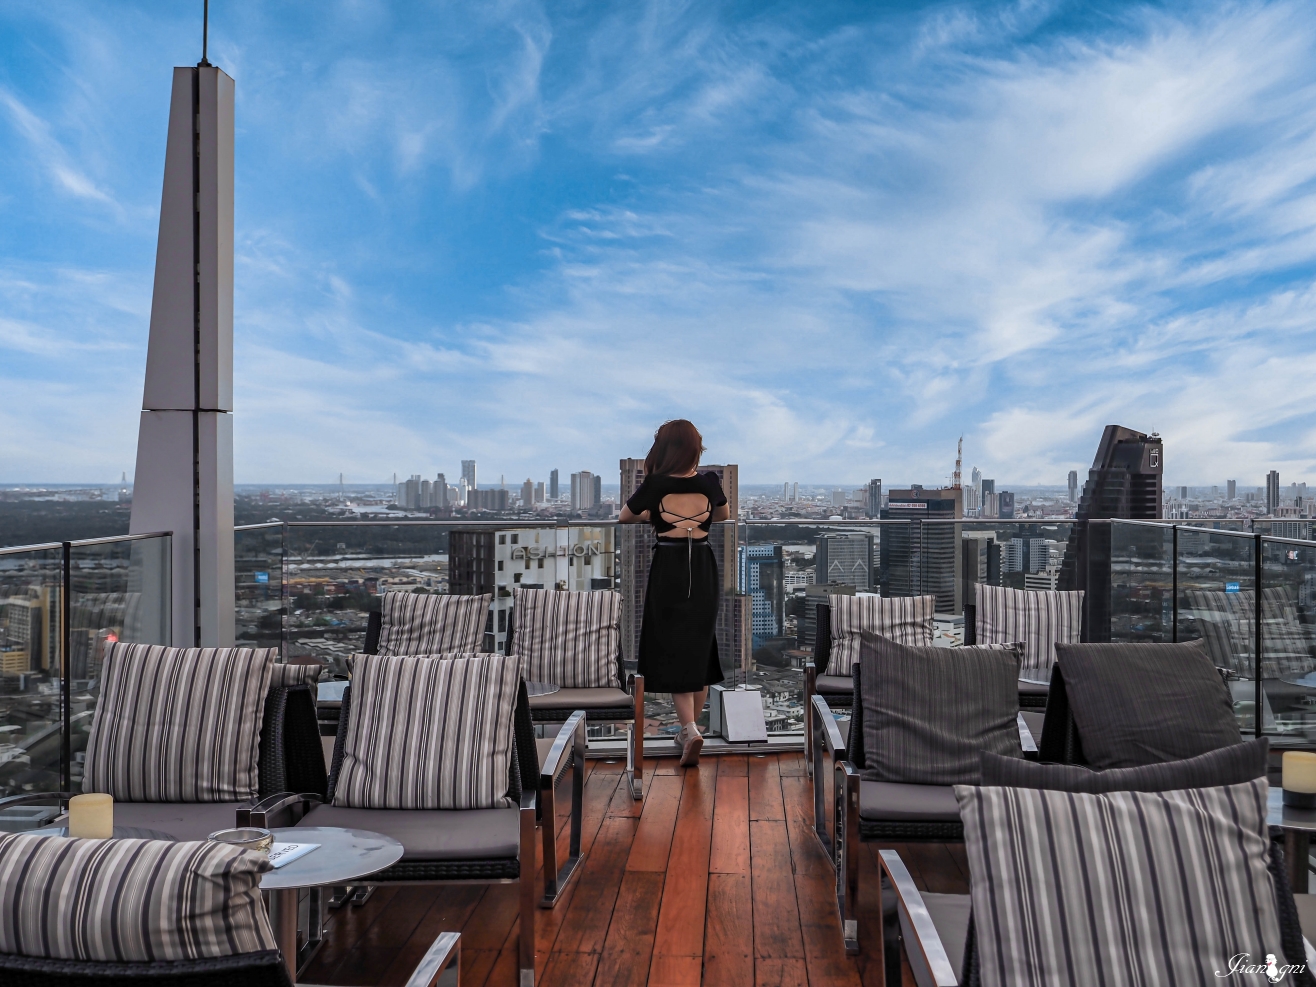 曼谷高空酒吧Octave Rooftop Lounge & Bar49樓人氣高空夜景 360俯視無死角 素坤逸萬豪酒店 @蔣妮の冰斗人生